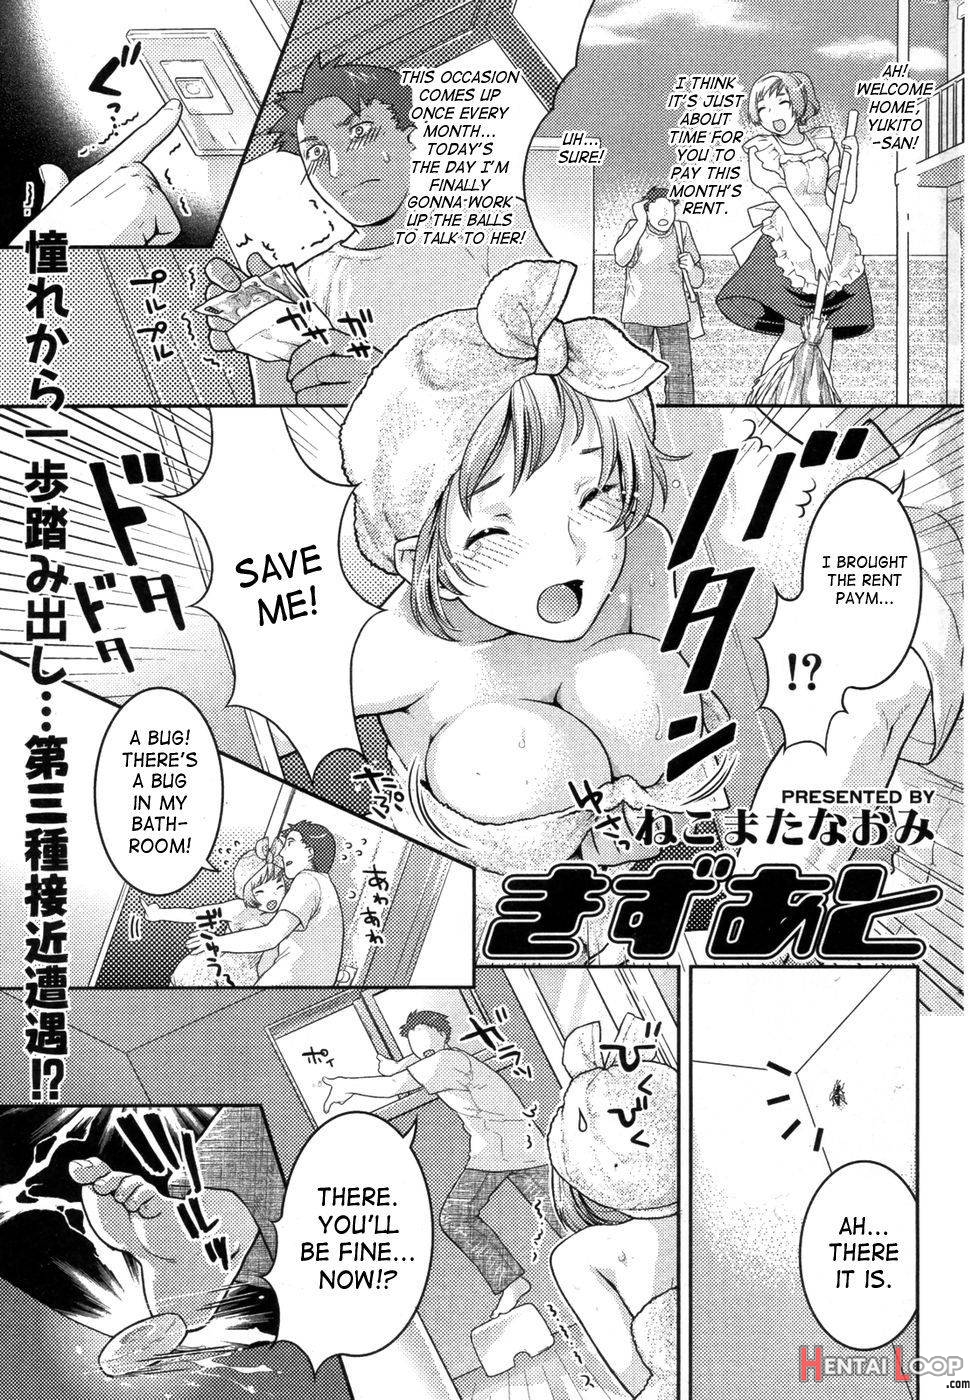 Kizuato page 1